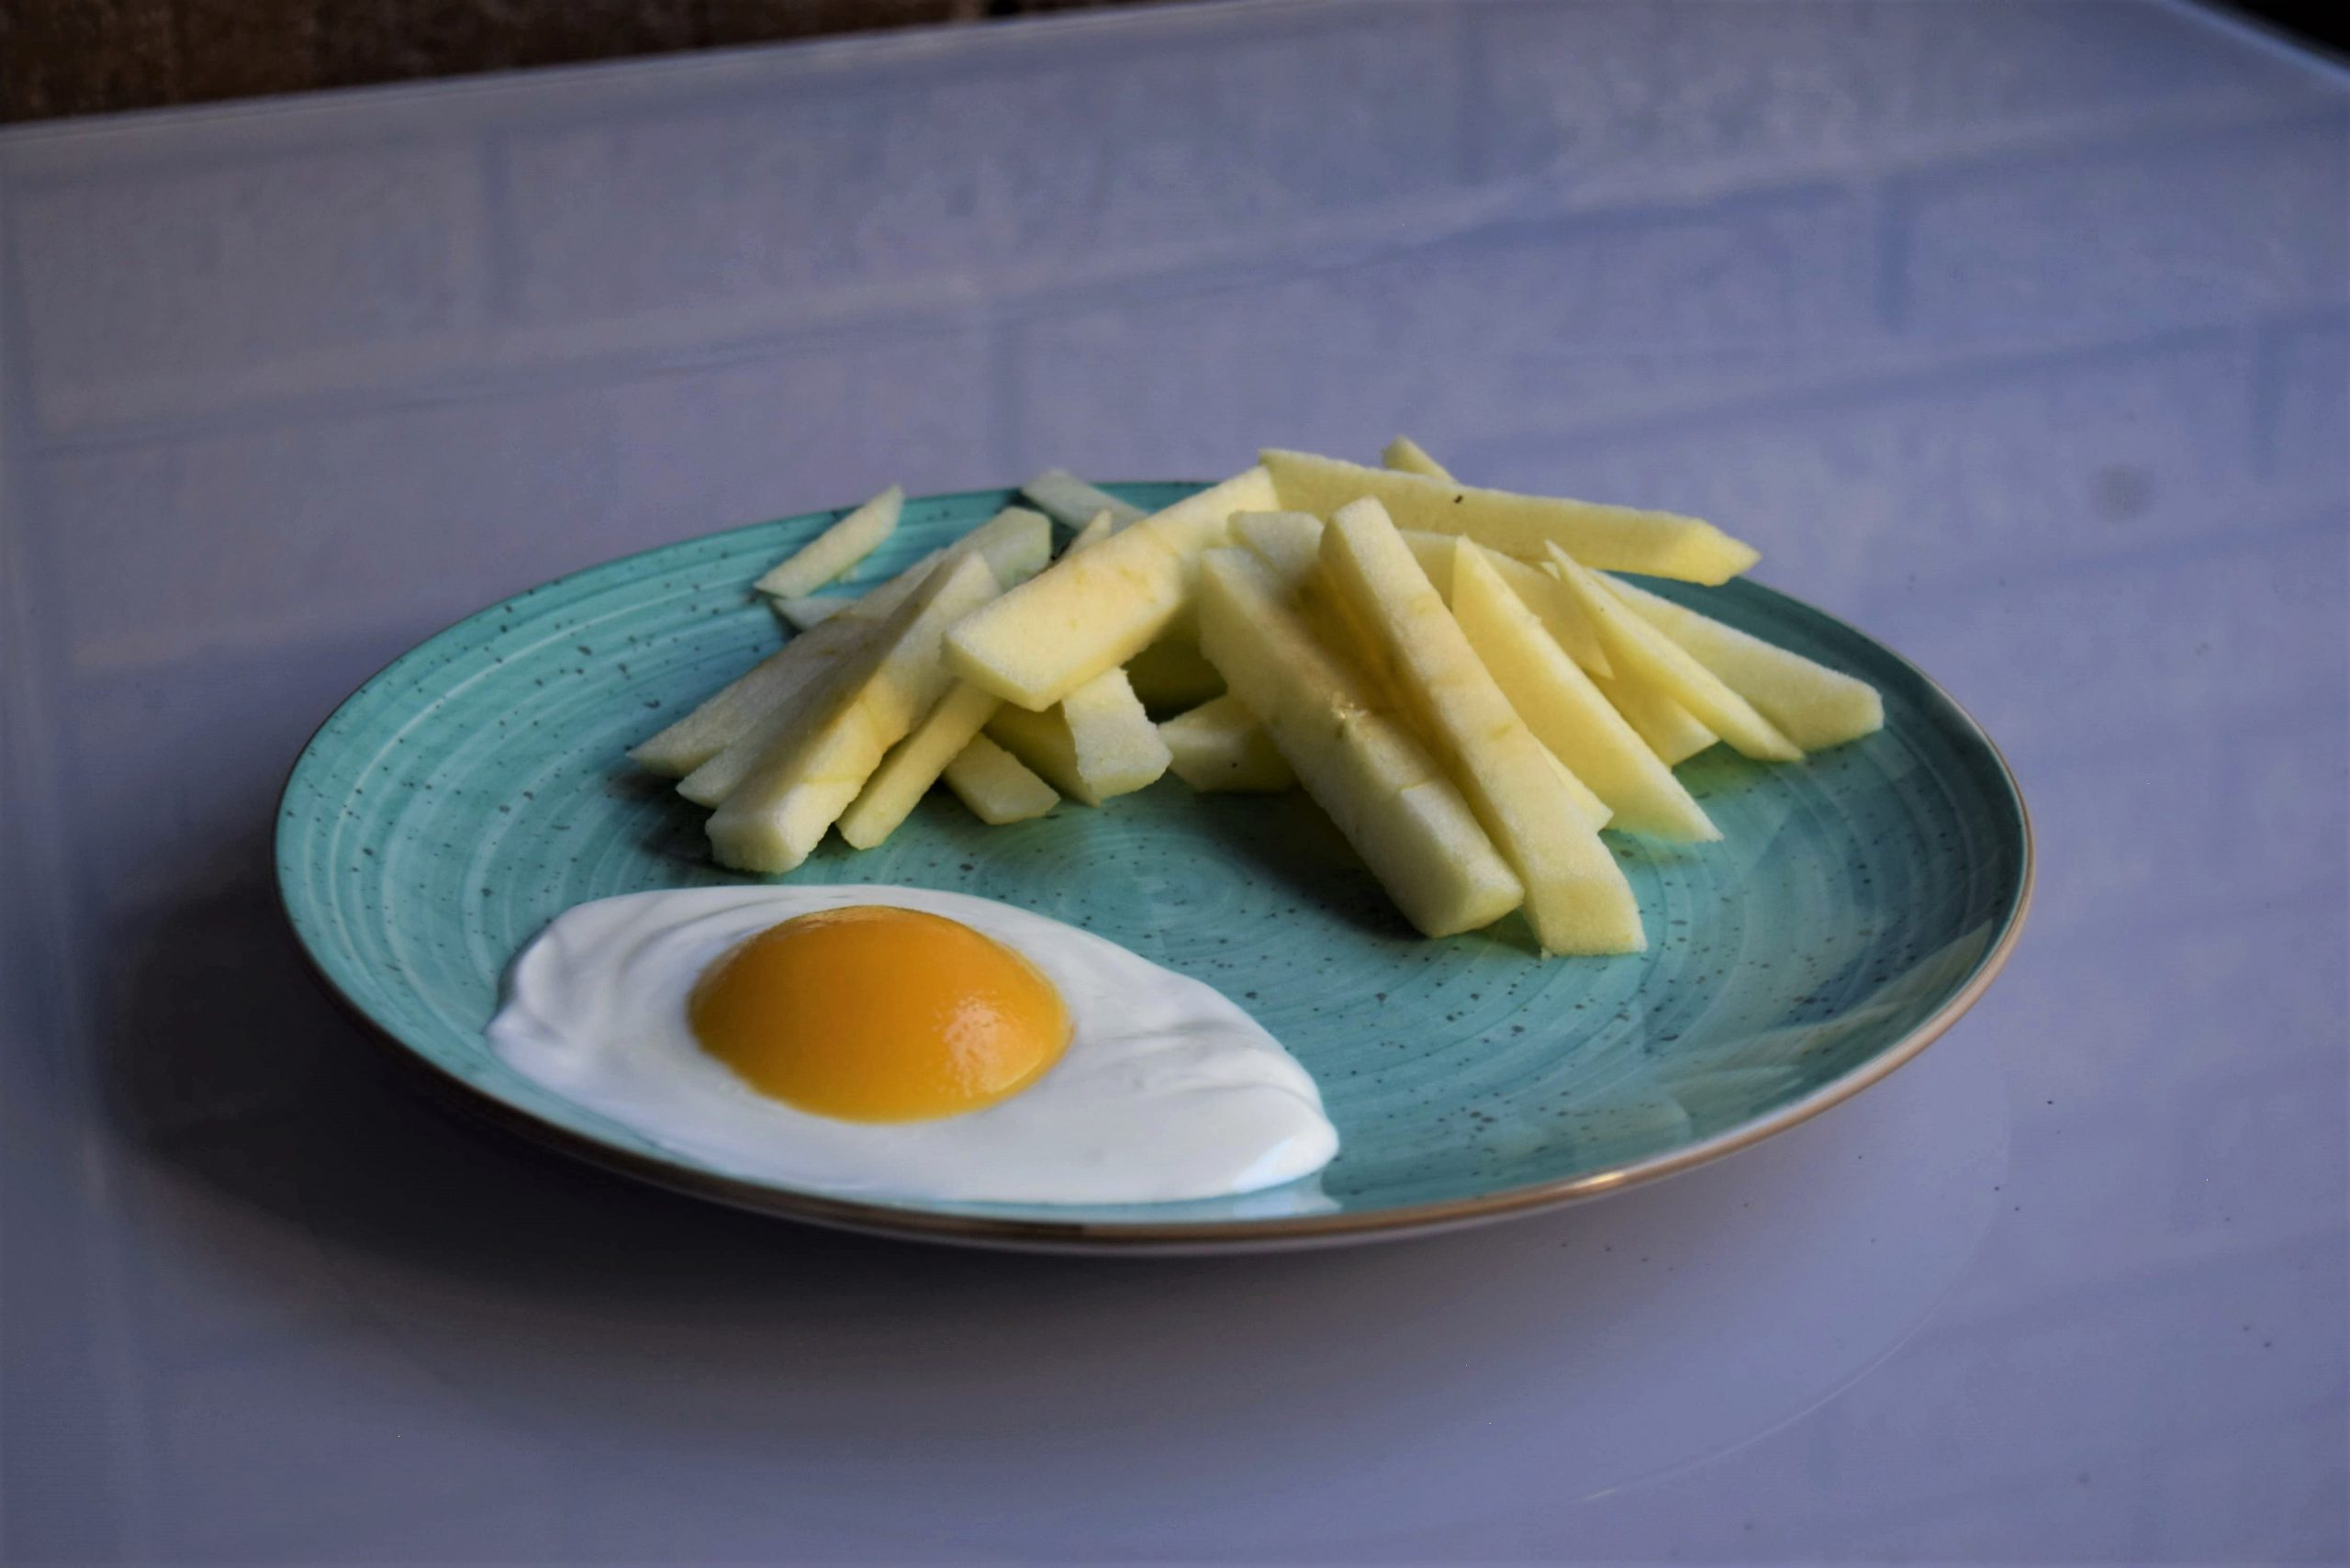 Trampantojos saludables: falso huevo con patatas